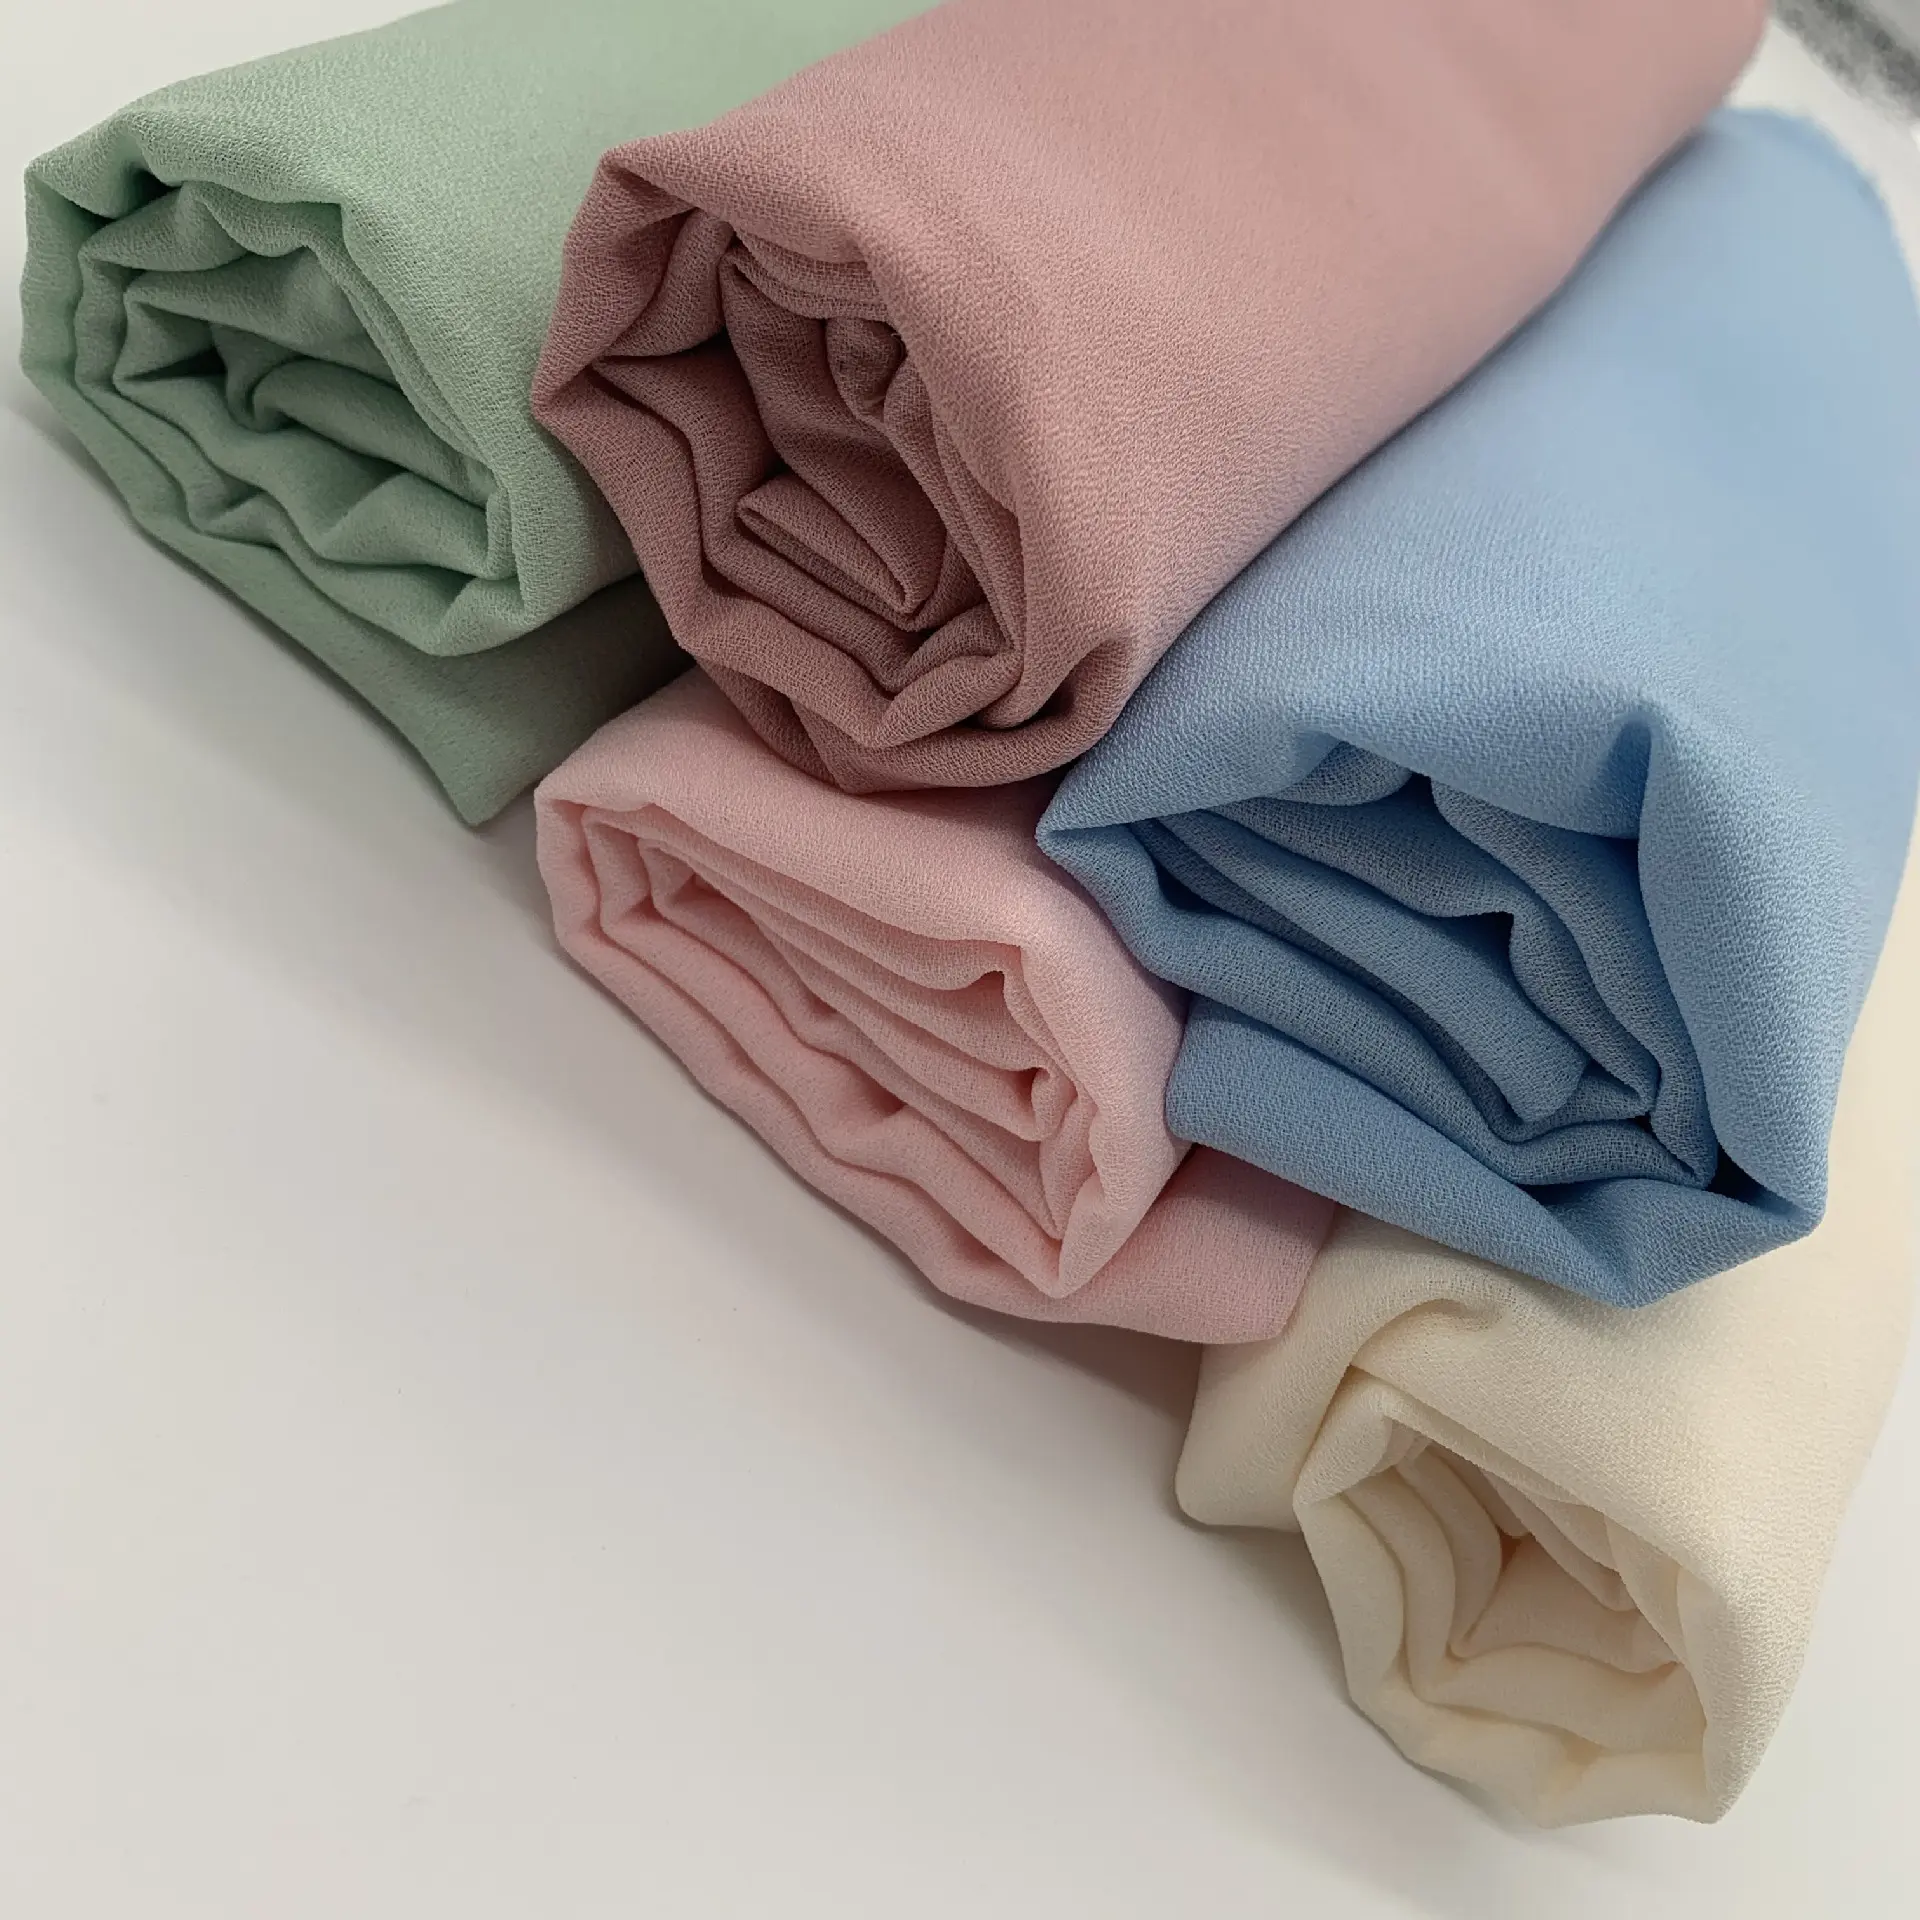 Tissu Fabrication composition 100% polyester mousse crêpe de chine tissus pour robes vêtements